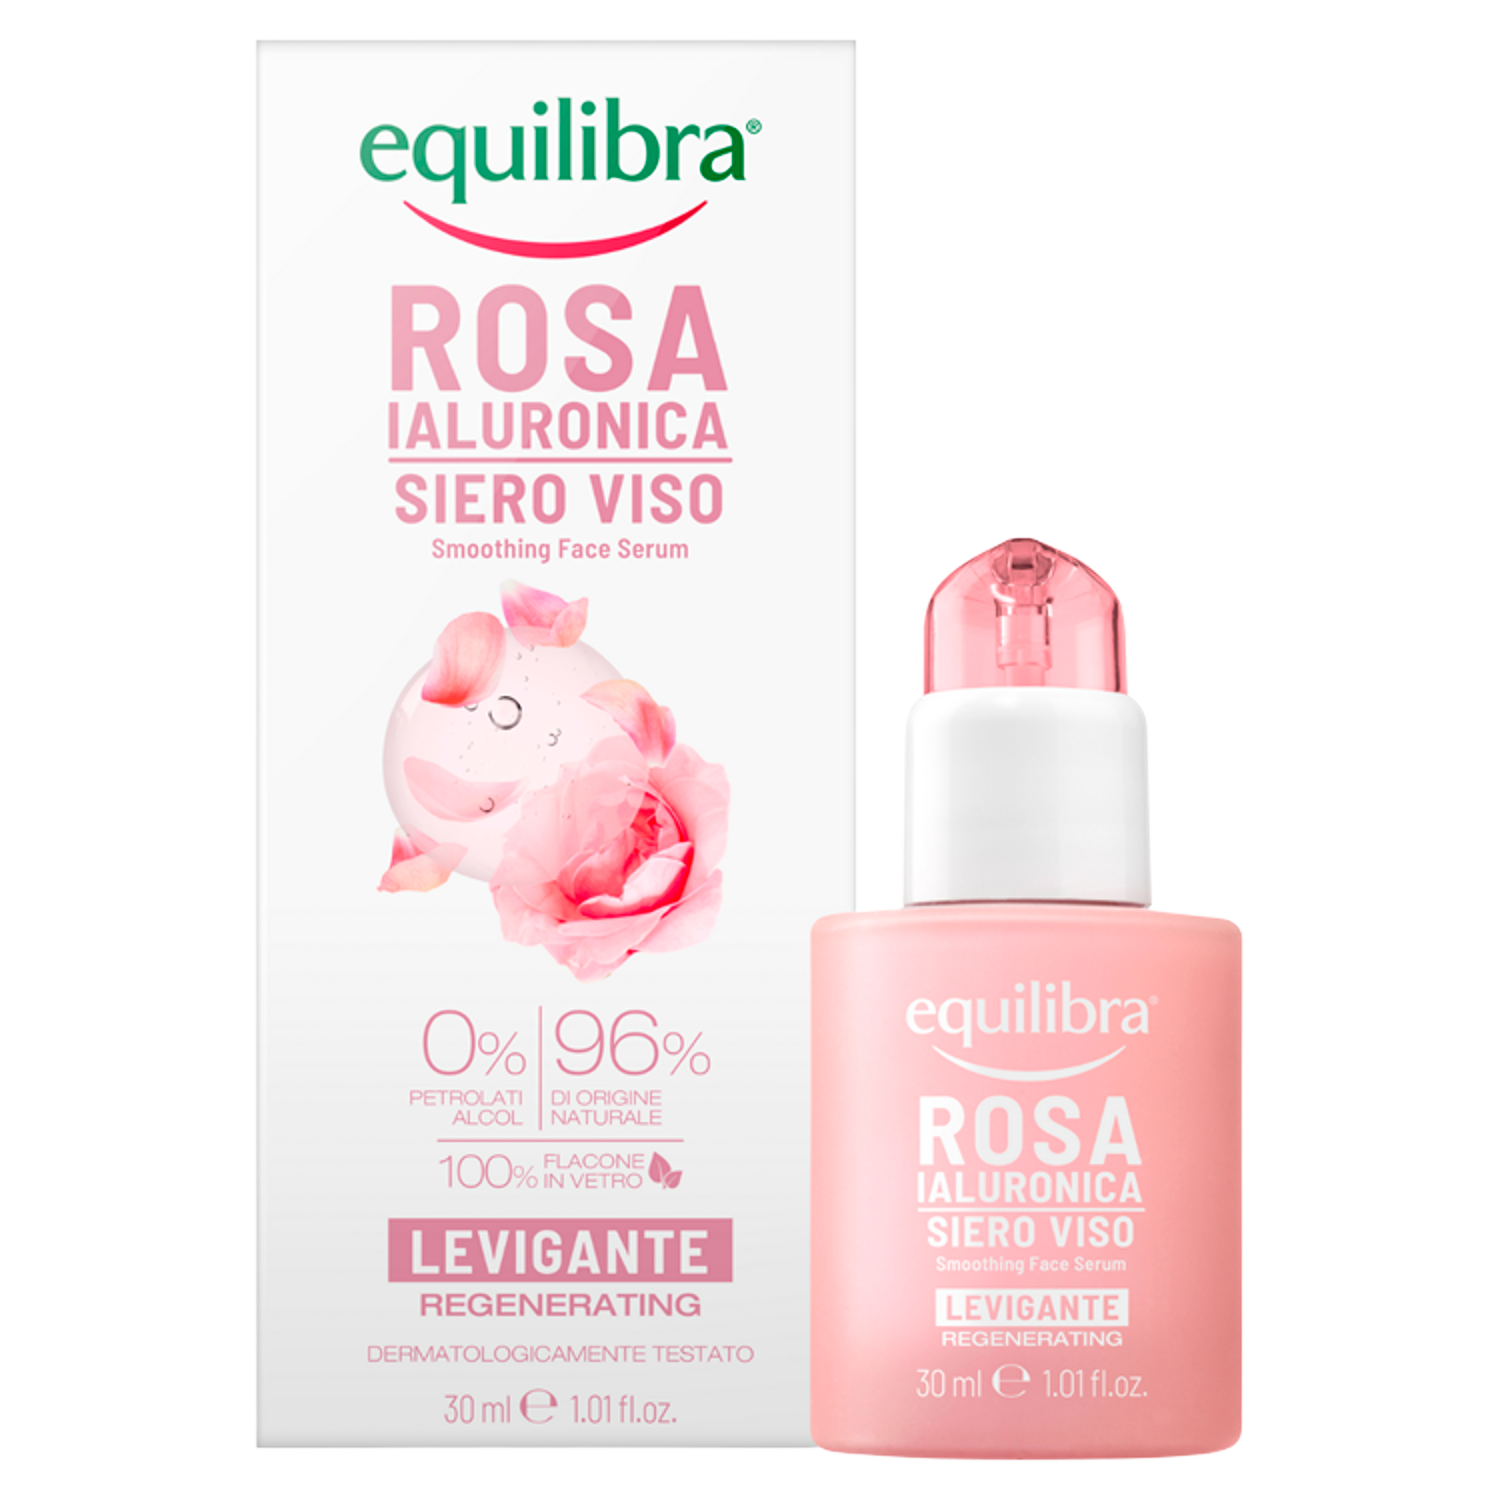 Equilibra Rosa разглаживающая розовая сыворотка для лица, 30 мл освежающая чистая розовая вода rosa pure 200 мл equilibra